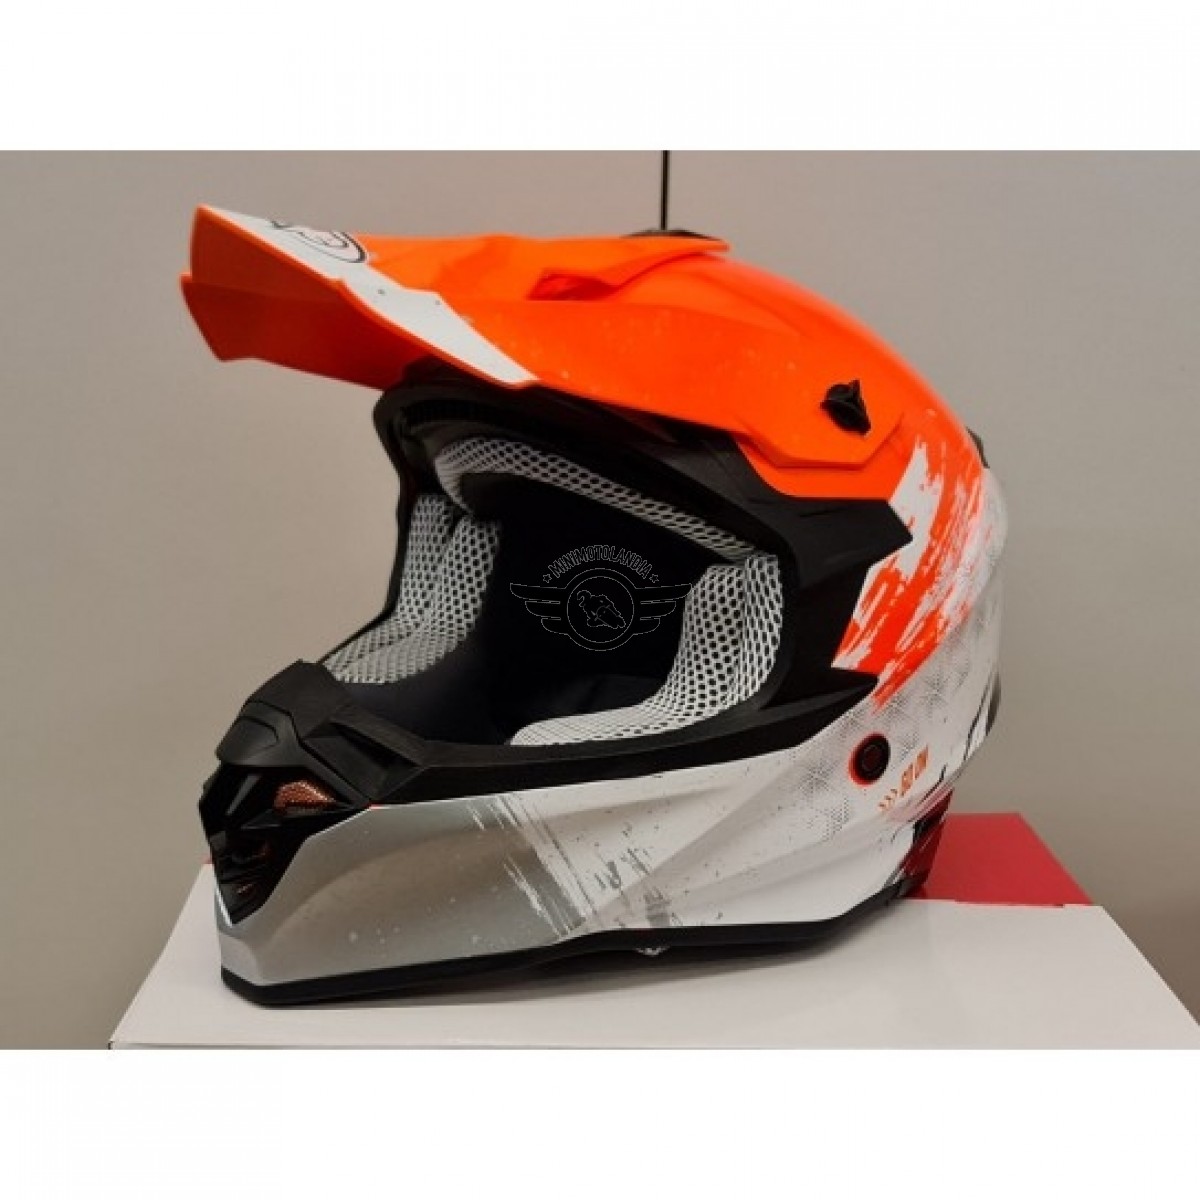 Casco One Helmets Racing Protezione Moto Cross Enduro Offroad